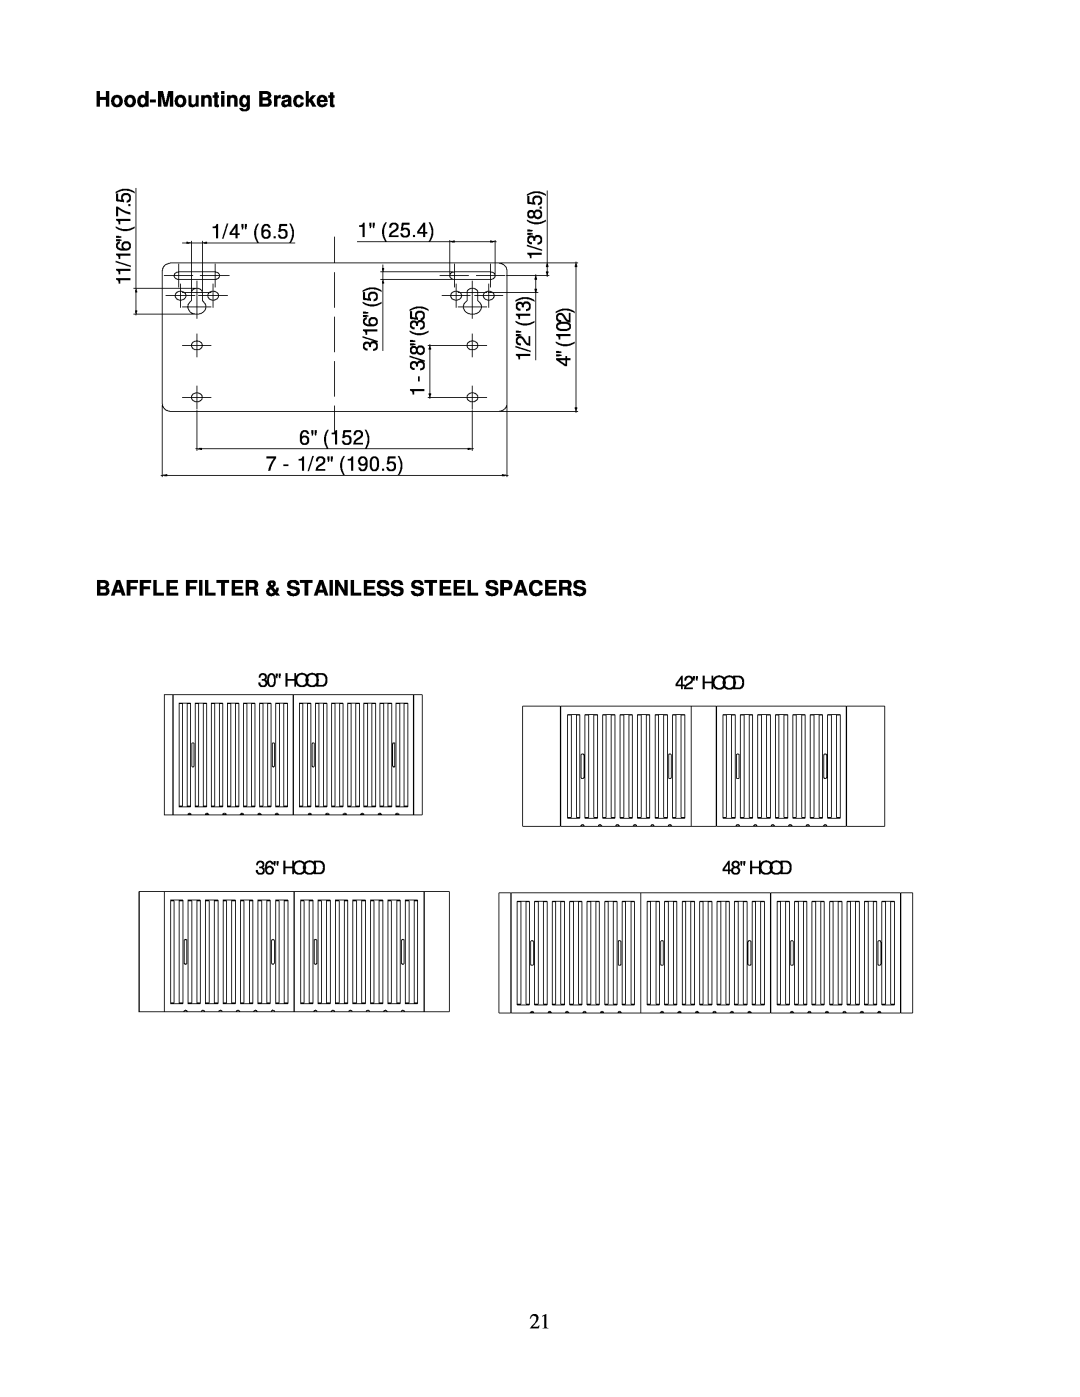 Kobe Range Hoods CH0042SQB, CH0036SQB Hood-Mounting Bracket, Baffle Filter & Stainless Steel Spacers, 11/16, 3/16, 7 - 1/2 